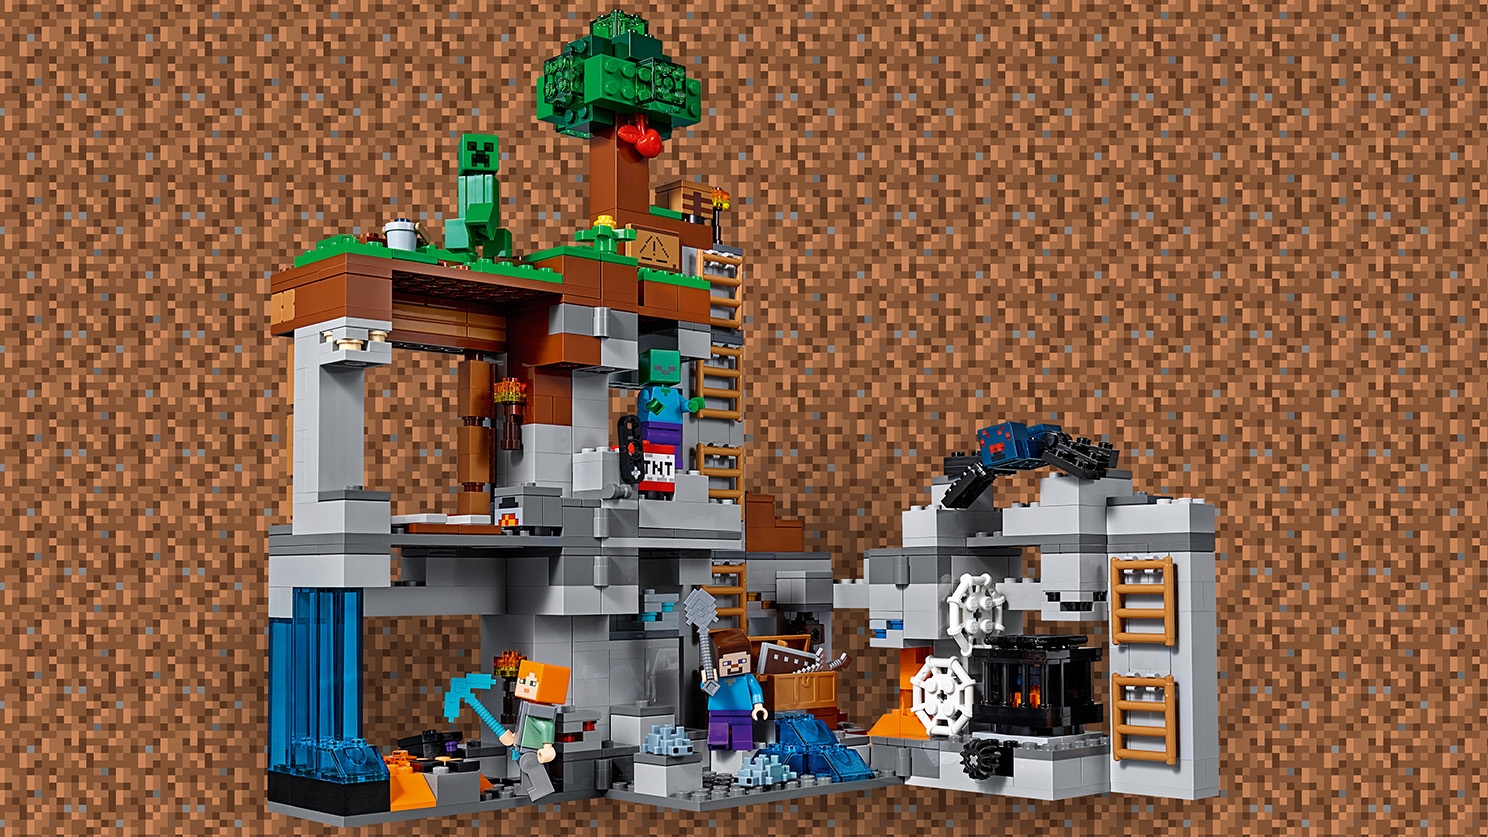 ベッドロックの冒険 21147 - レゴ®マインクラフト - LEGO.comキッズ